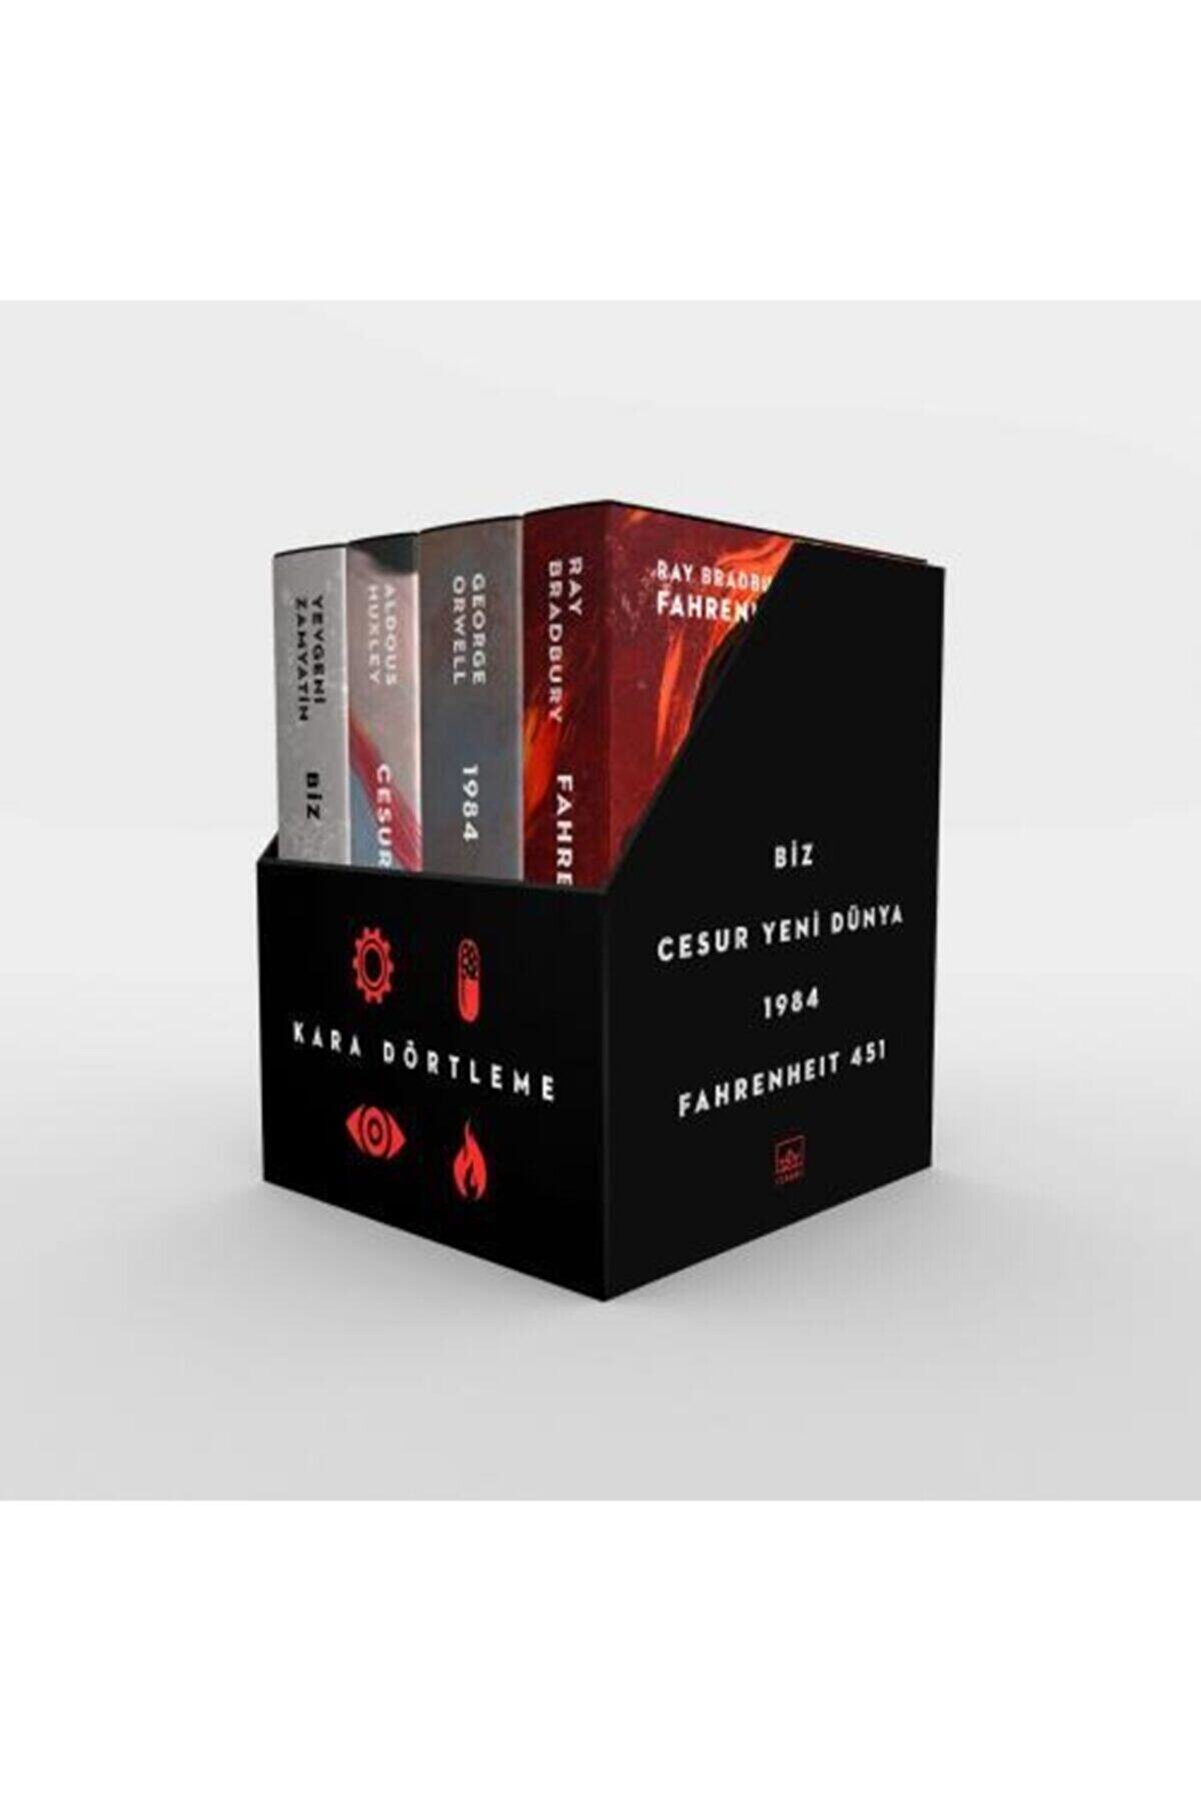 İthaki Yayınları Kara Dörtleme Kutu Set: Biz, Cesur Yeni Dünya, 1984, Fahrenheit 451